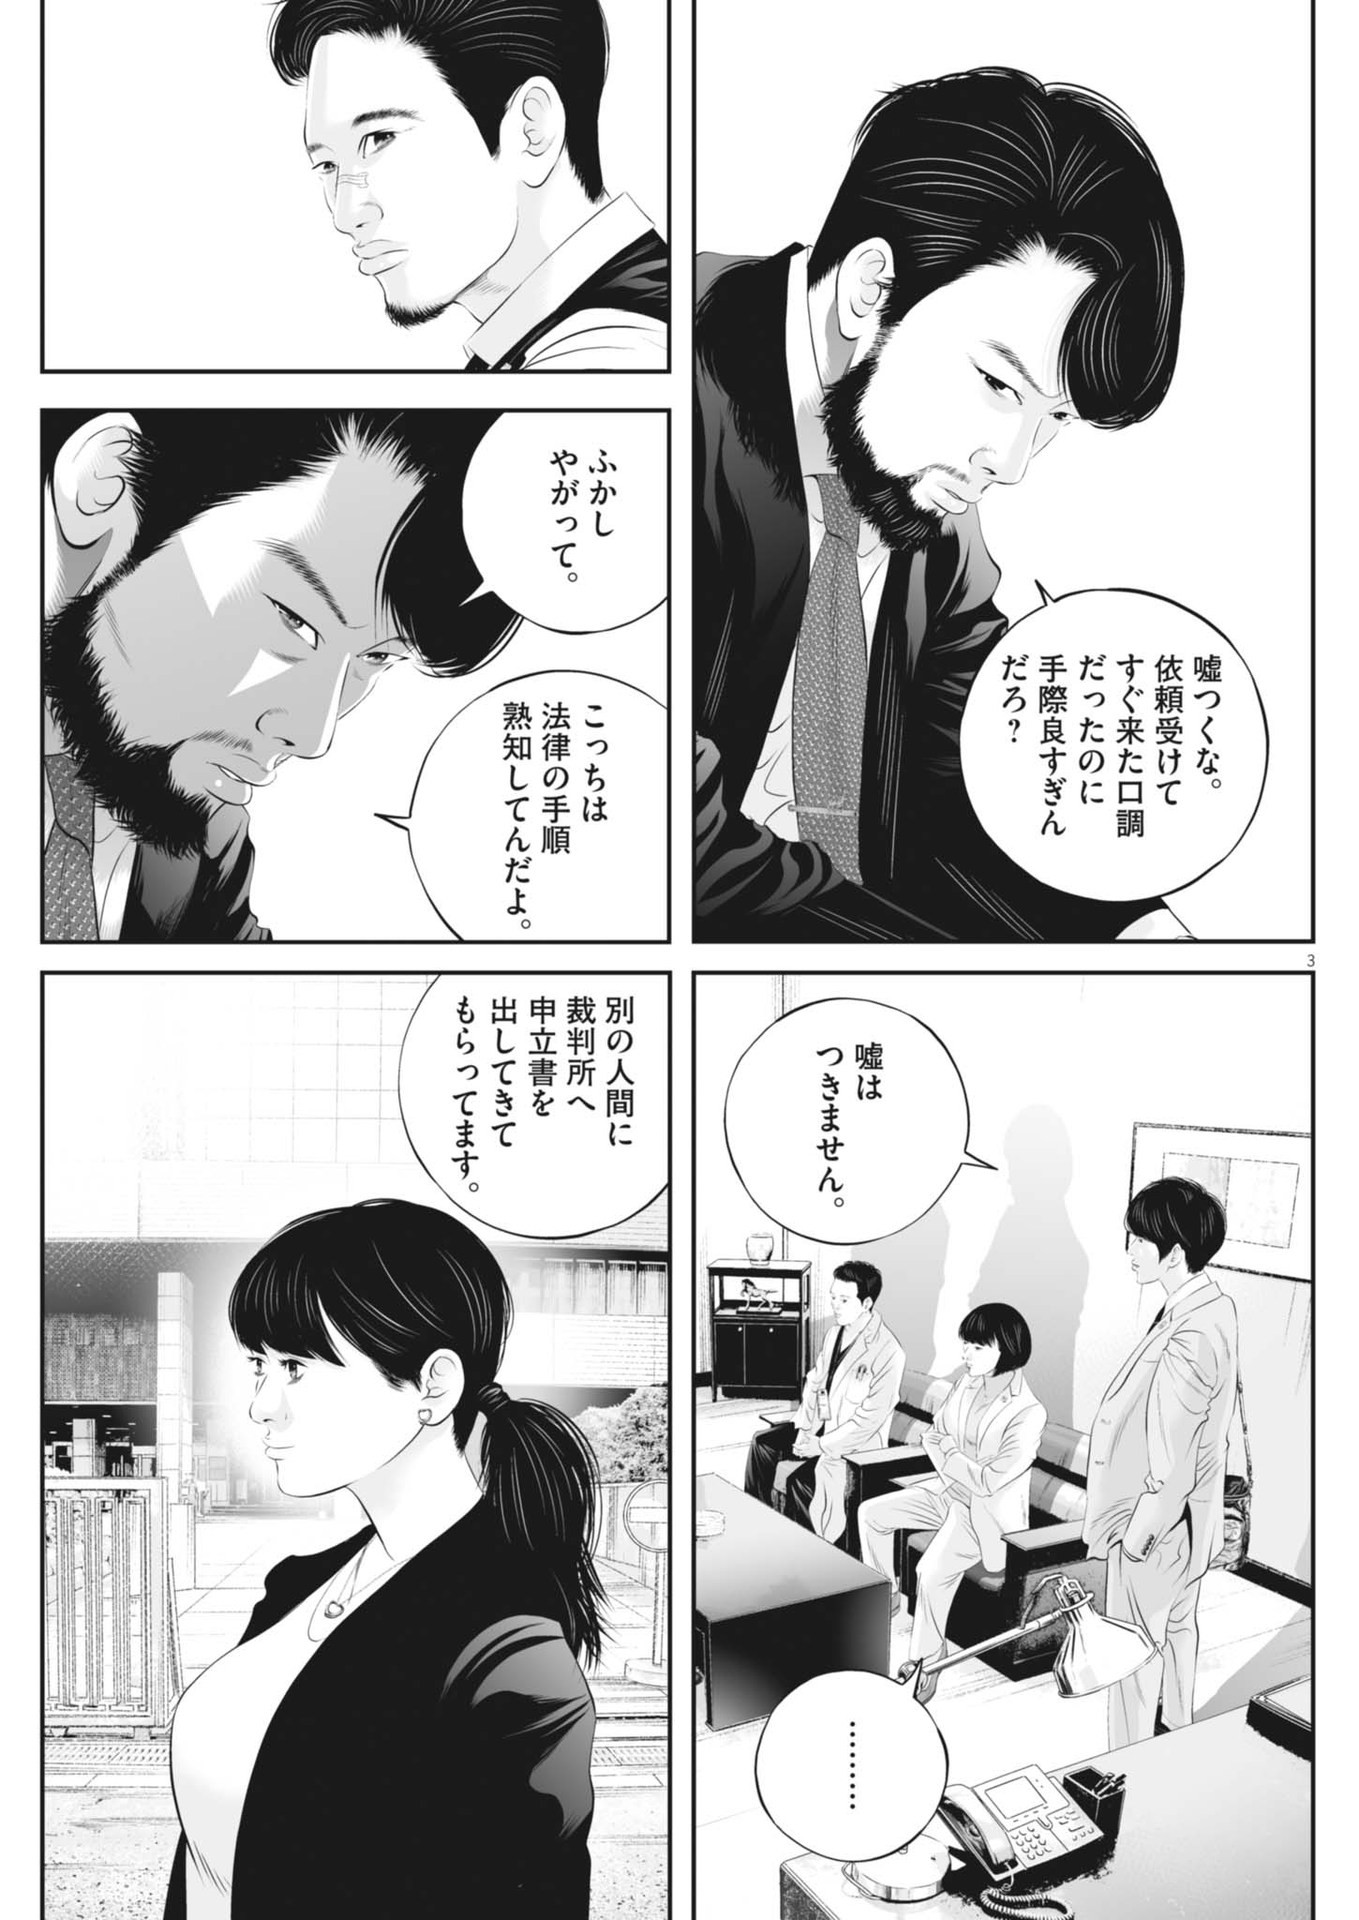 Kujou no Taizai - Chapter 102 - Page 3